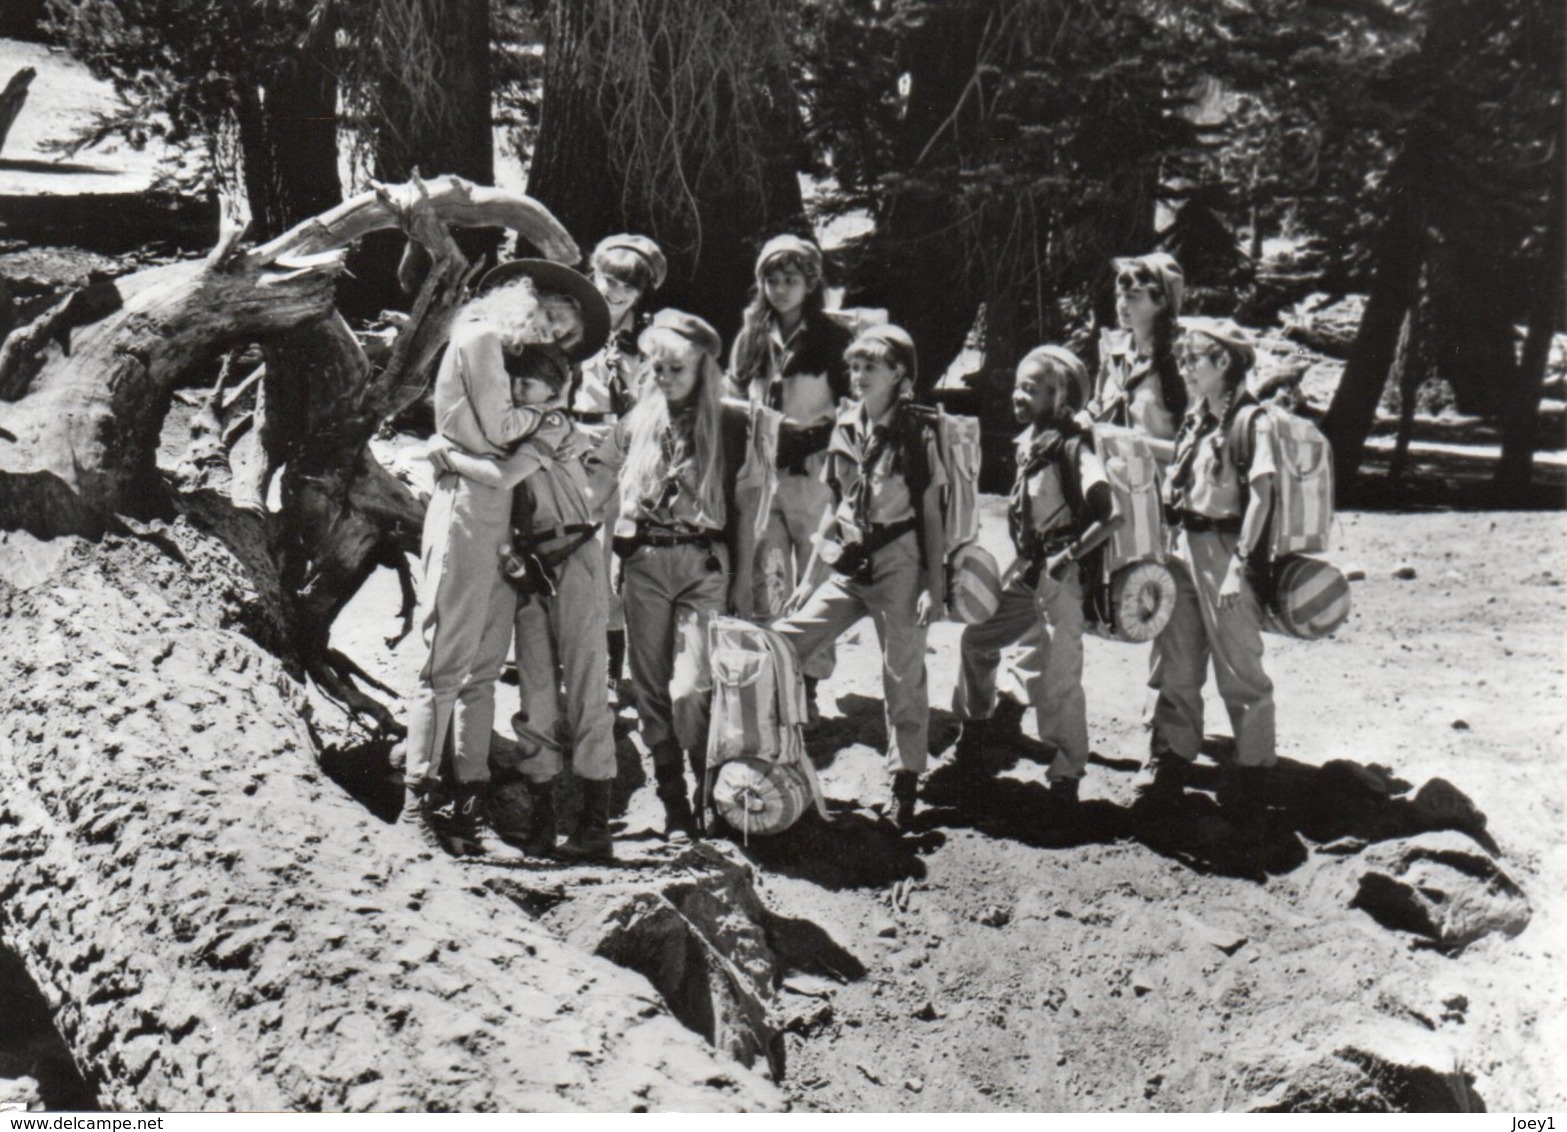 1 Lot De 7 Photos Du Film Les Scouts De Beverly Hills Sorti En 1989 Avec Shelley Long.format 13/18 - Célébrités